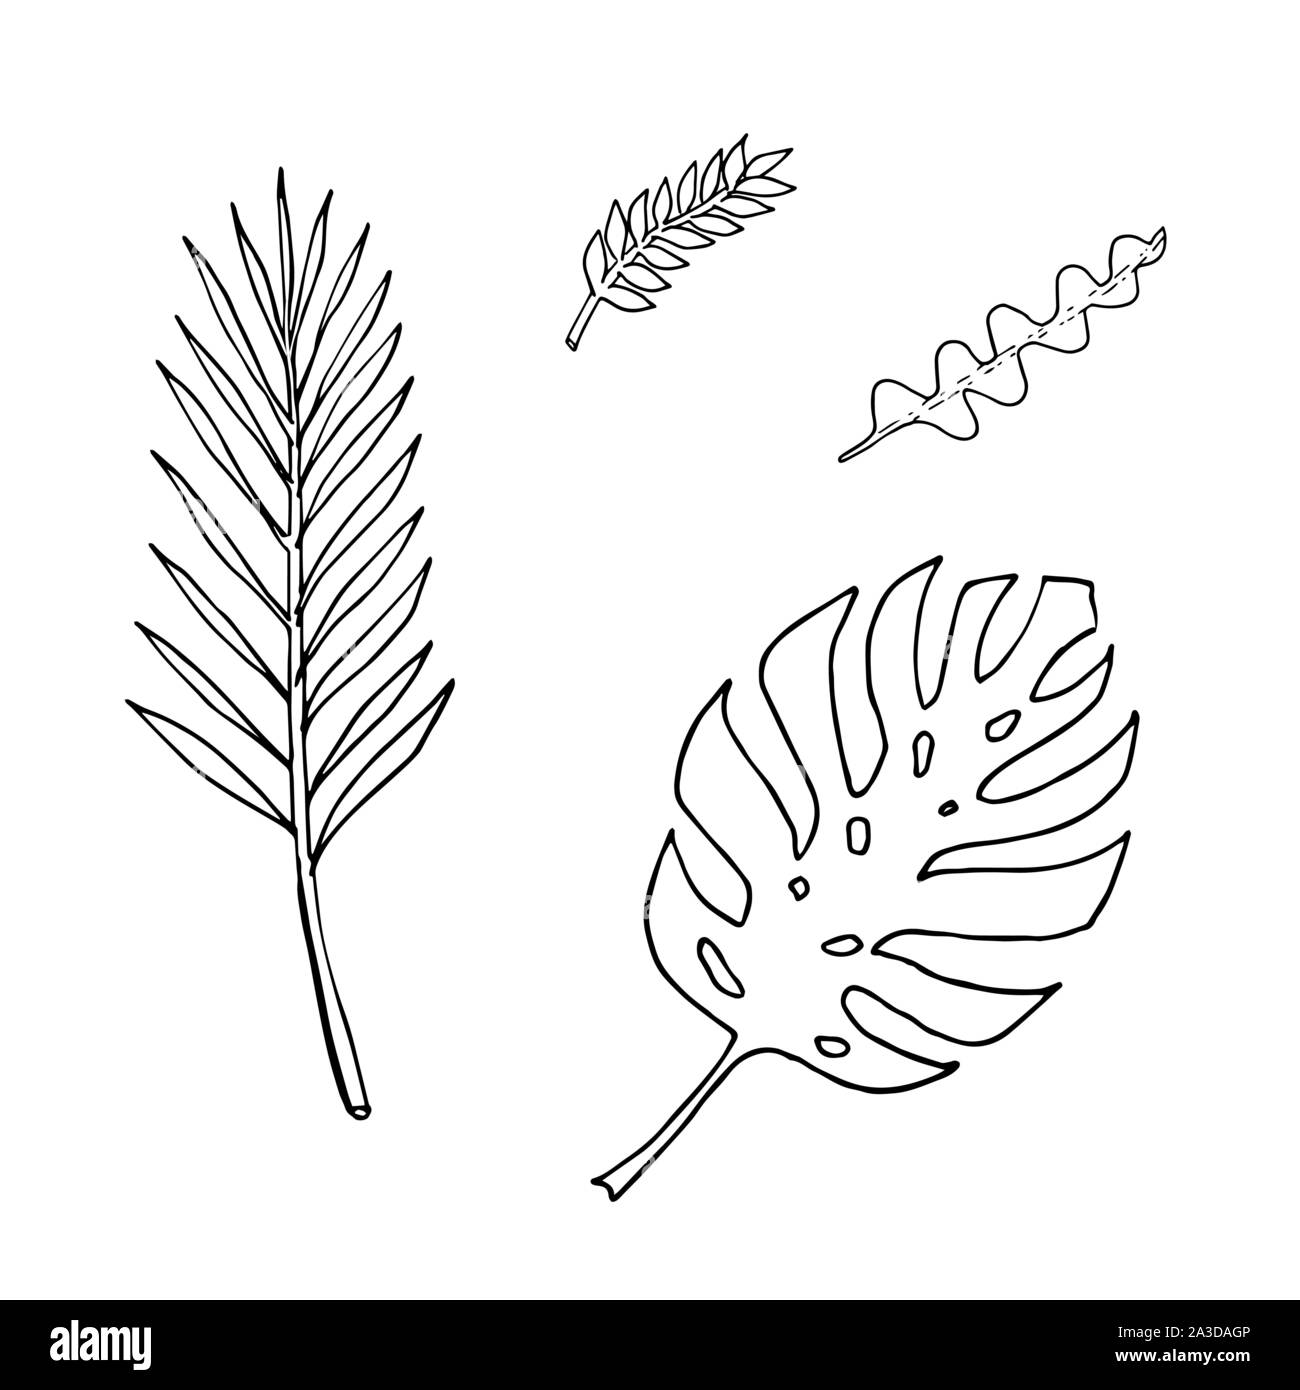 Set di di foglie: epiphyllum, Monstera, palm, zamioculca. Monocromatico doodle sketch, disegno a mano. Contorno nero su sfondo bianco. Illustrazione Vettoriale Illustrazione Vettoriale